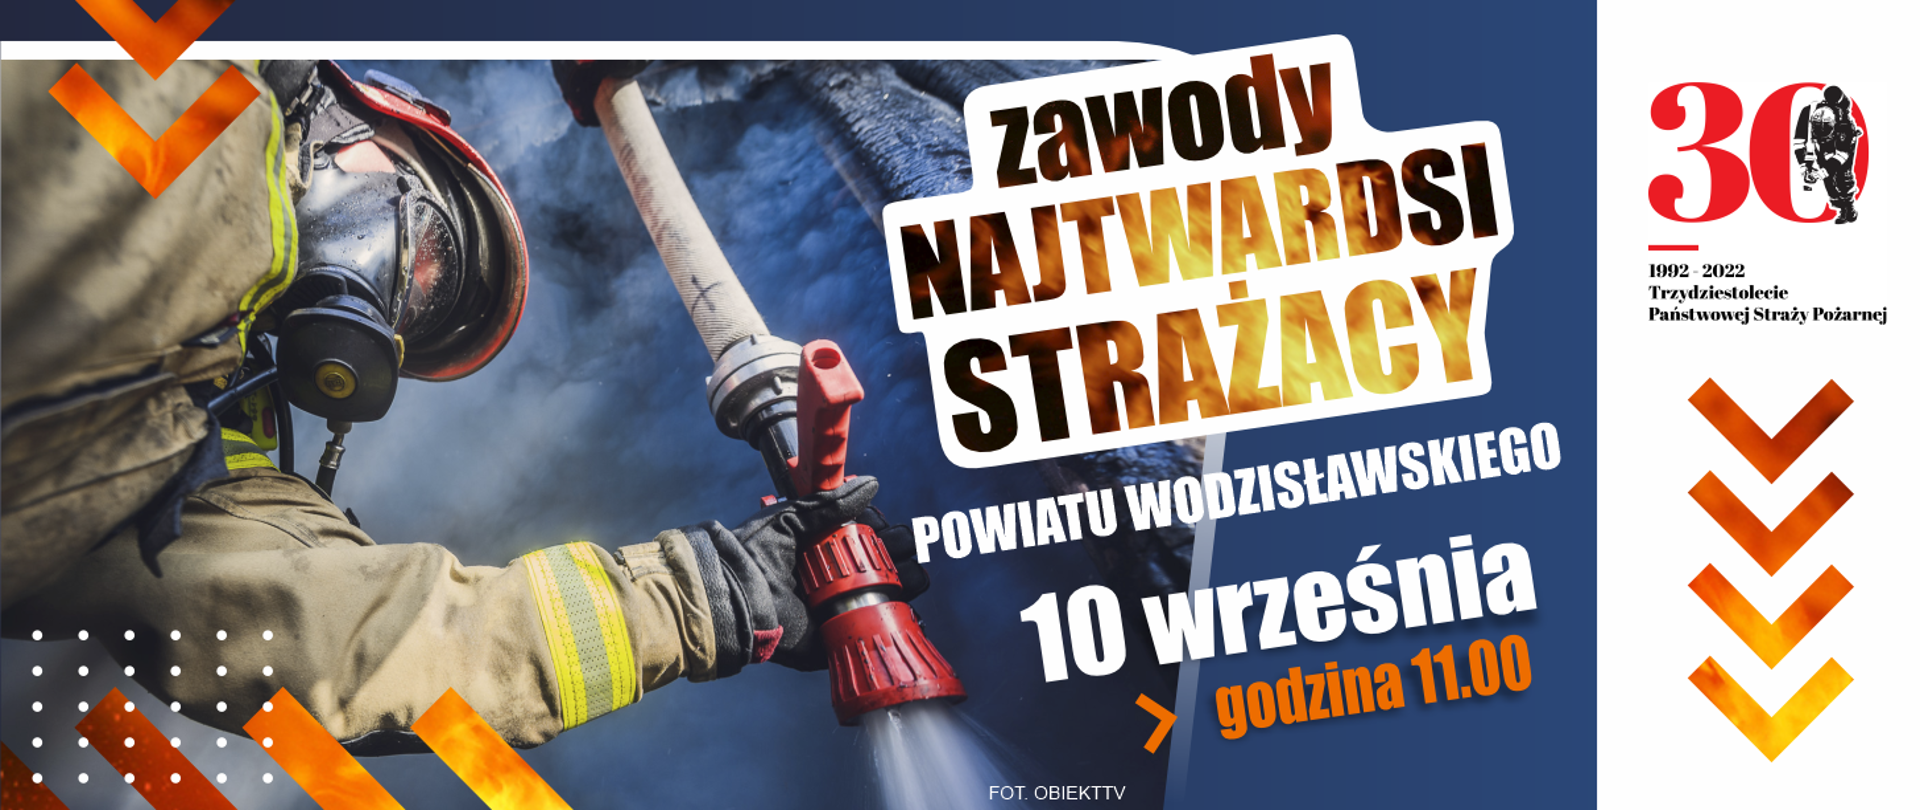 Baner reklamujący Zawody Najtwardsi Strażacy Powiatu Wodzisławskiego. 10 września 2022, godzina 11:00